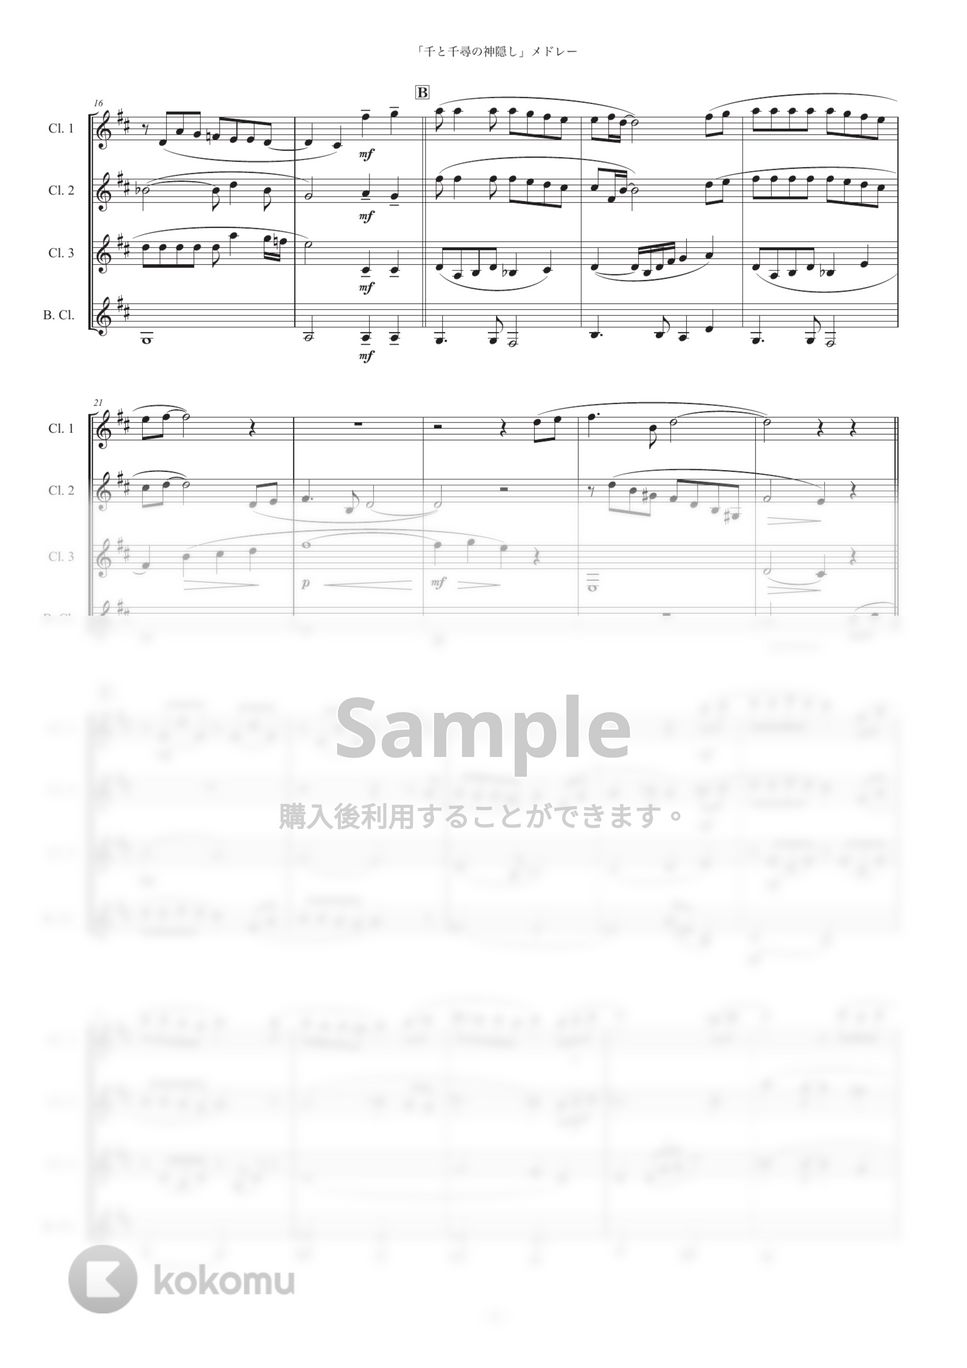 久石譲 - 「千と千尋の神隠し」メドレー (クラリネット四重奏) by Musik Kanal